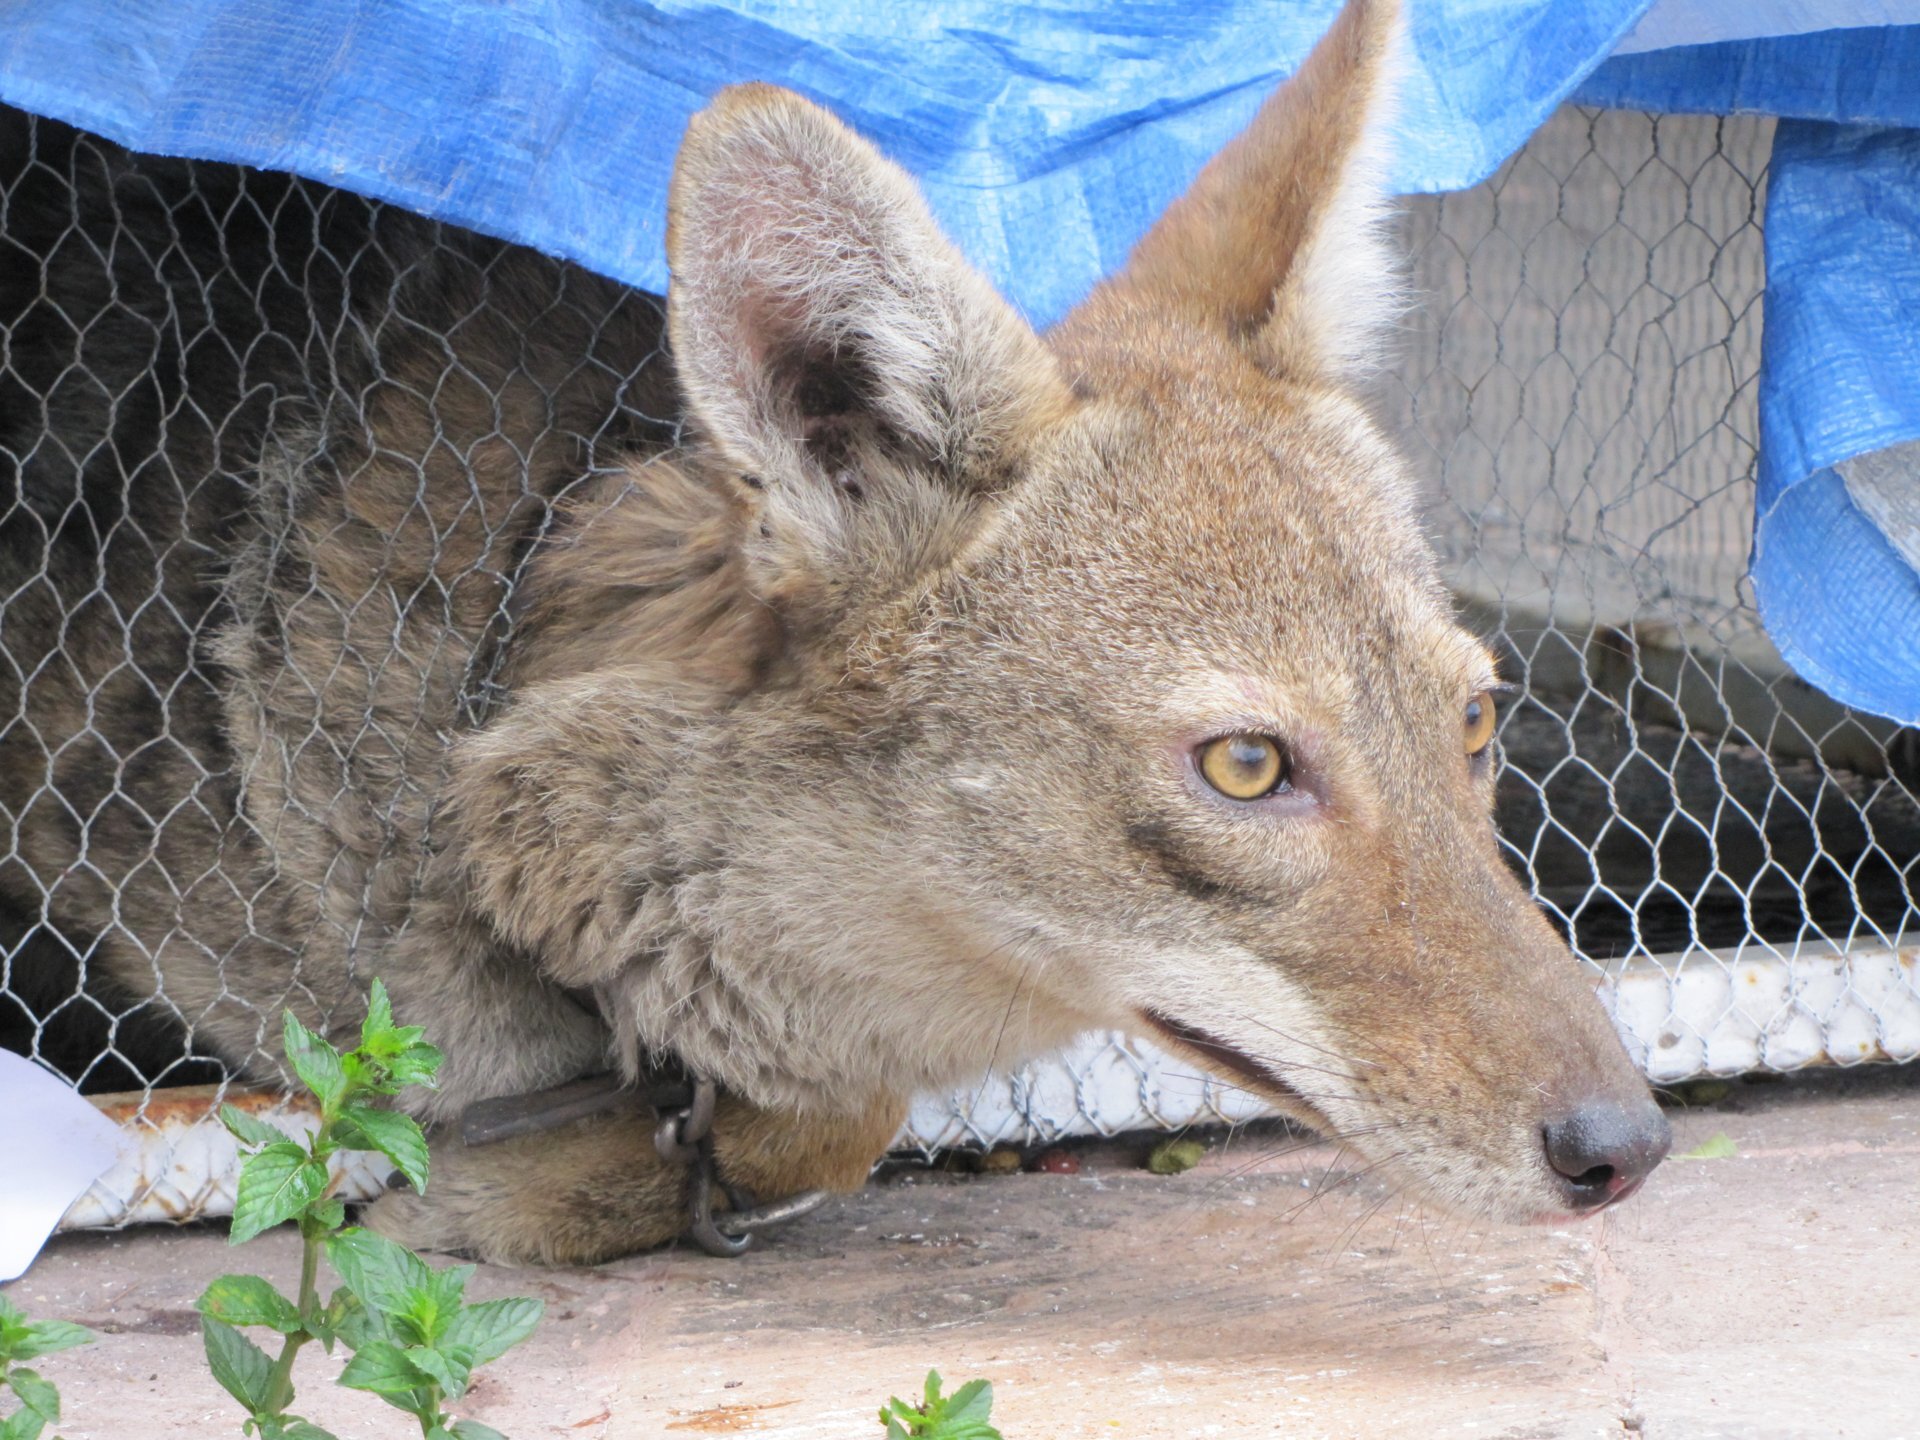 Imagen 4. Coyote decomisado de un taller mecánico por tenerlo ilegalmente como mascota. Fotos de María Eugenia Espinosa Flores, Guanajuato, 2013.